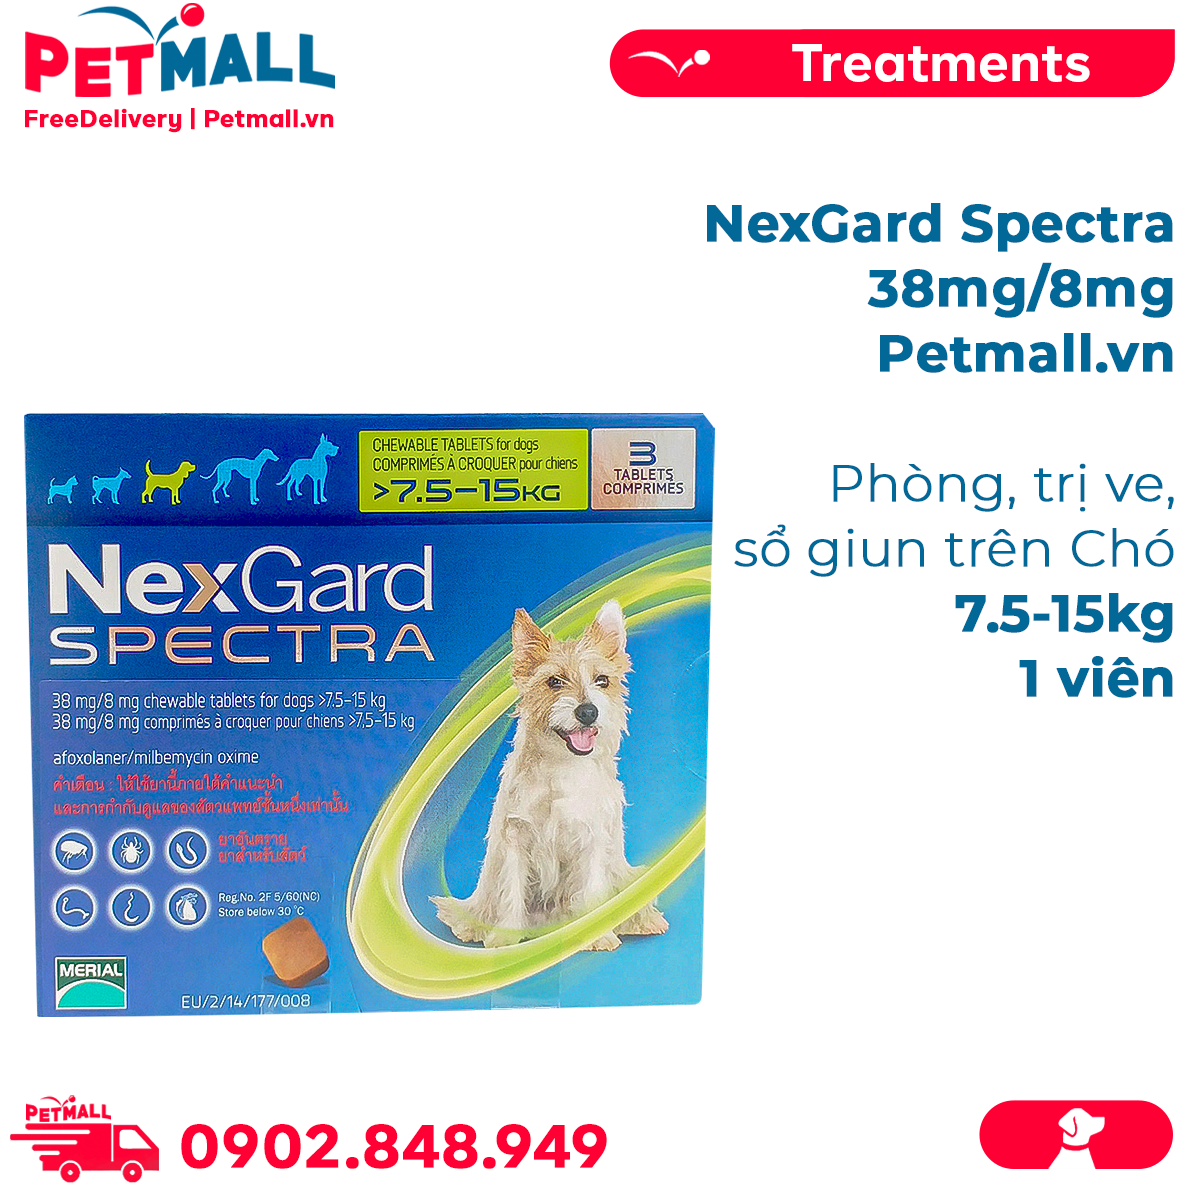 NexGard Spectra 38mg/8mg Phòng trị ve sổ giun trên Chó 7.5-15kg - 1viên Petmall